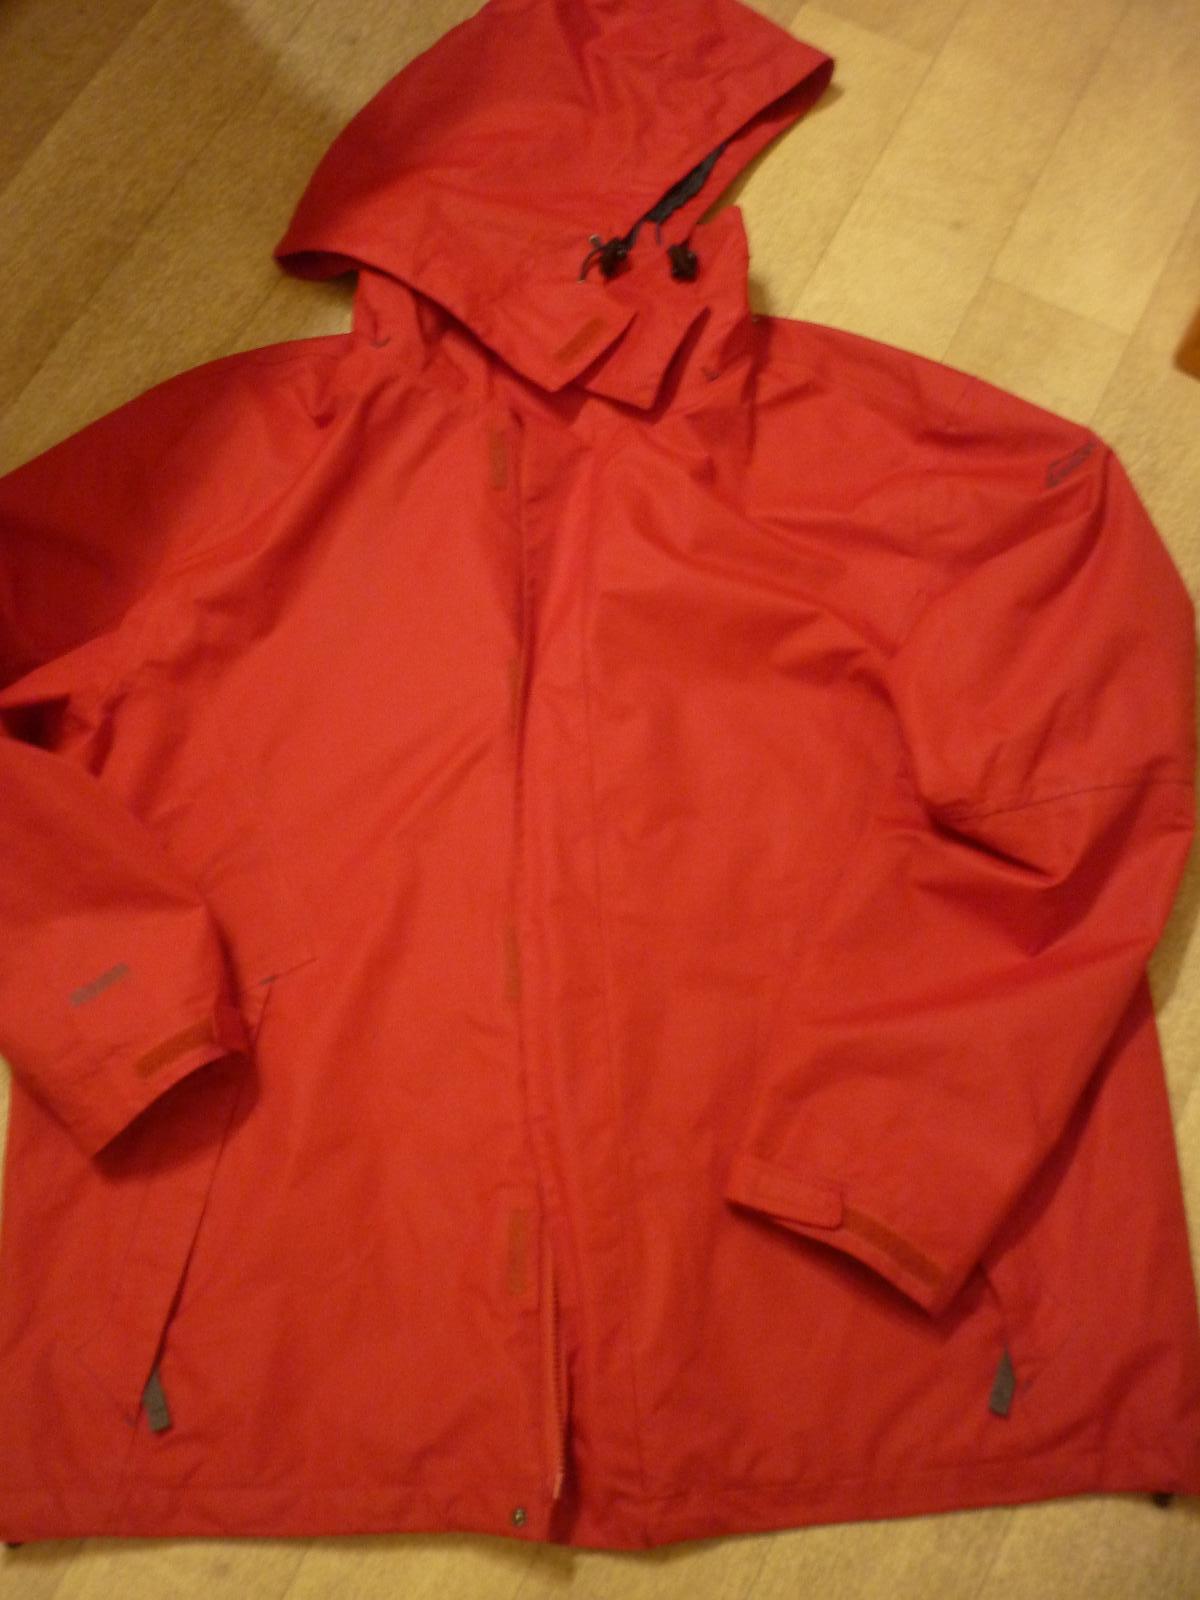 Pěkná vyteplená červená bunda - dámská - vel. XXXL - zn. Mc KINLEY | Aukro